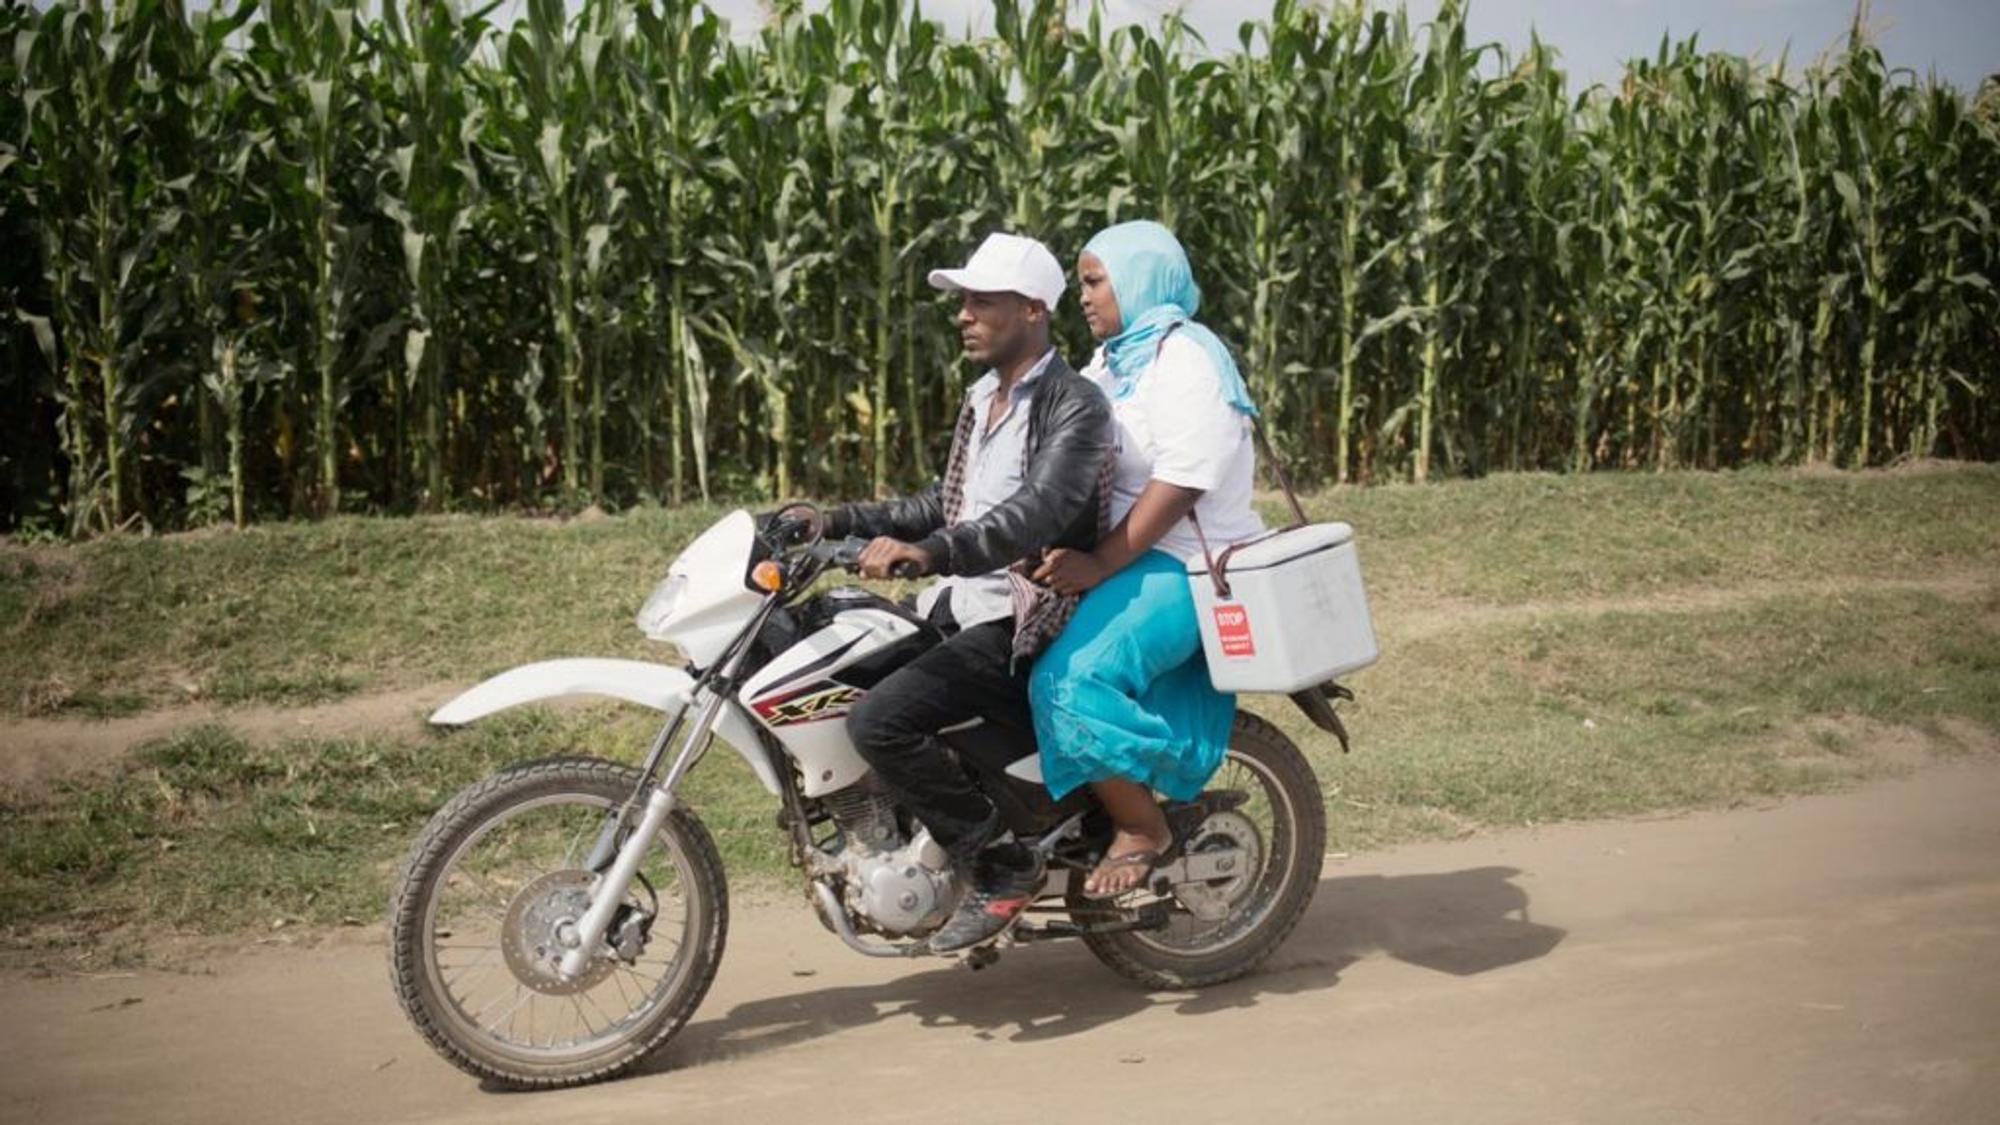 Mann und Frau sitzen auf einem Motorrad